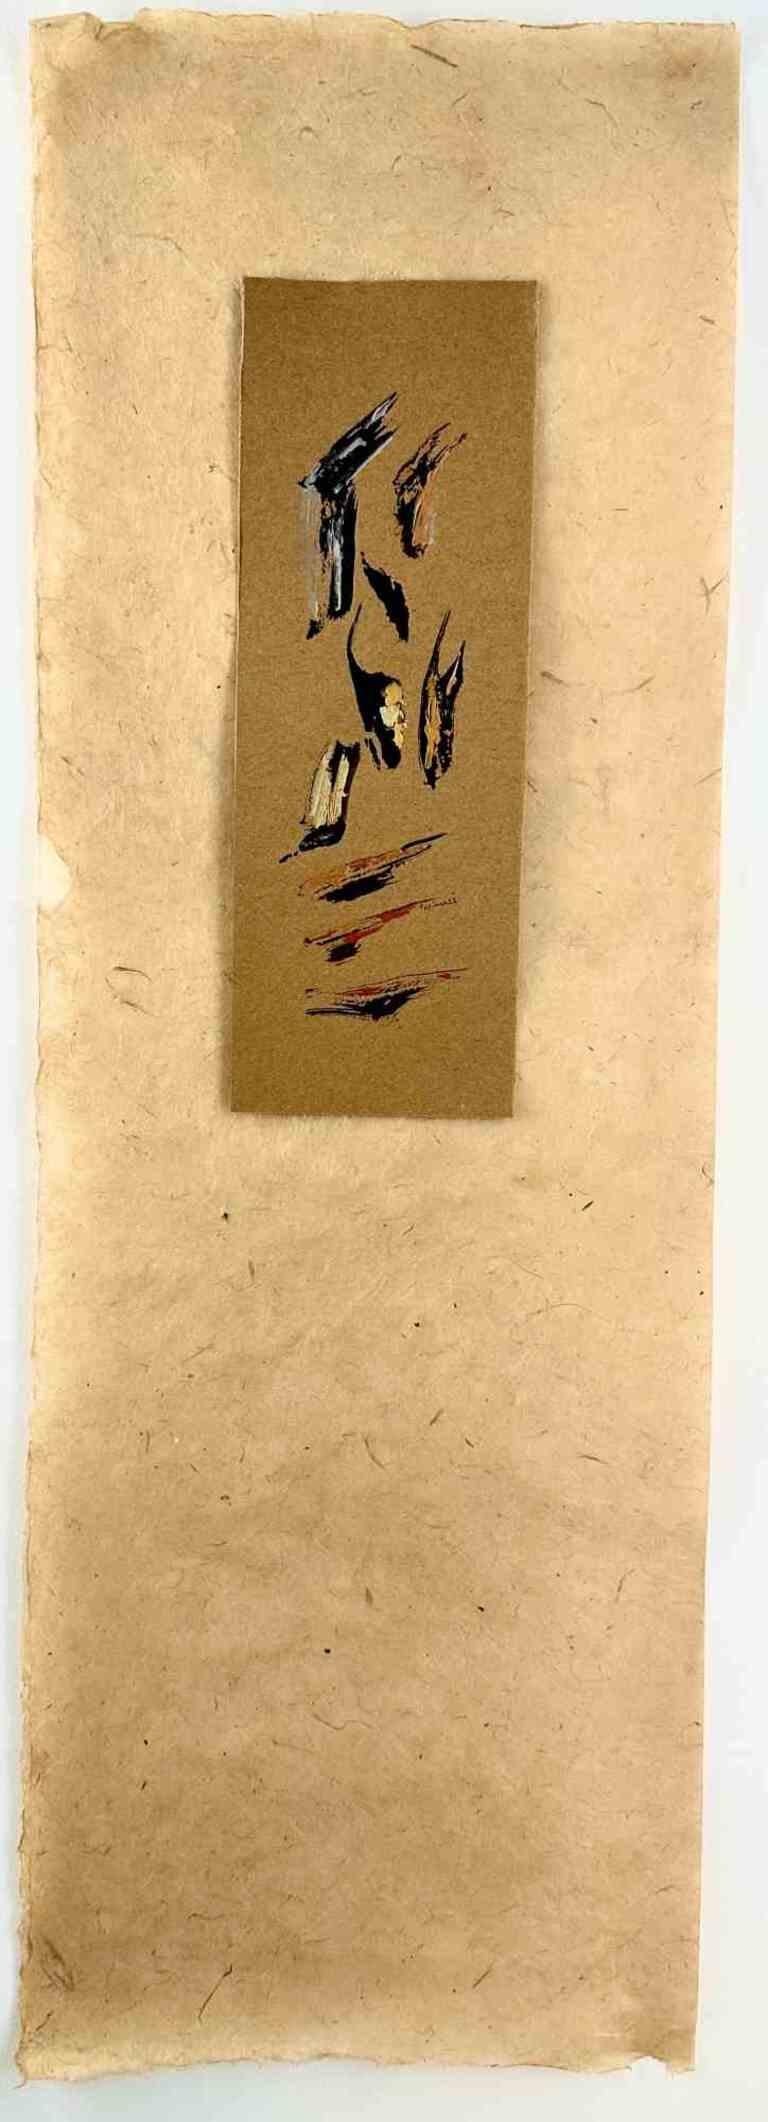 Song in Sunset of Revolution est un dessin réalisé par la peintre et poète iranienne Parimah Avani en 2023.

Sumi et encre persane traditionnelle, et acrylique sur papier kraft.

Signé et daté à la main.

Excellentes conditions.

De la série "Métaux